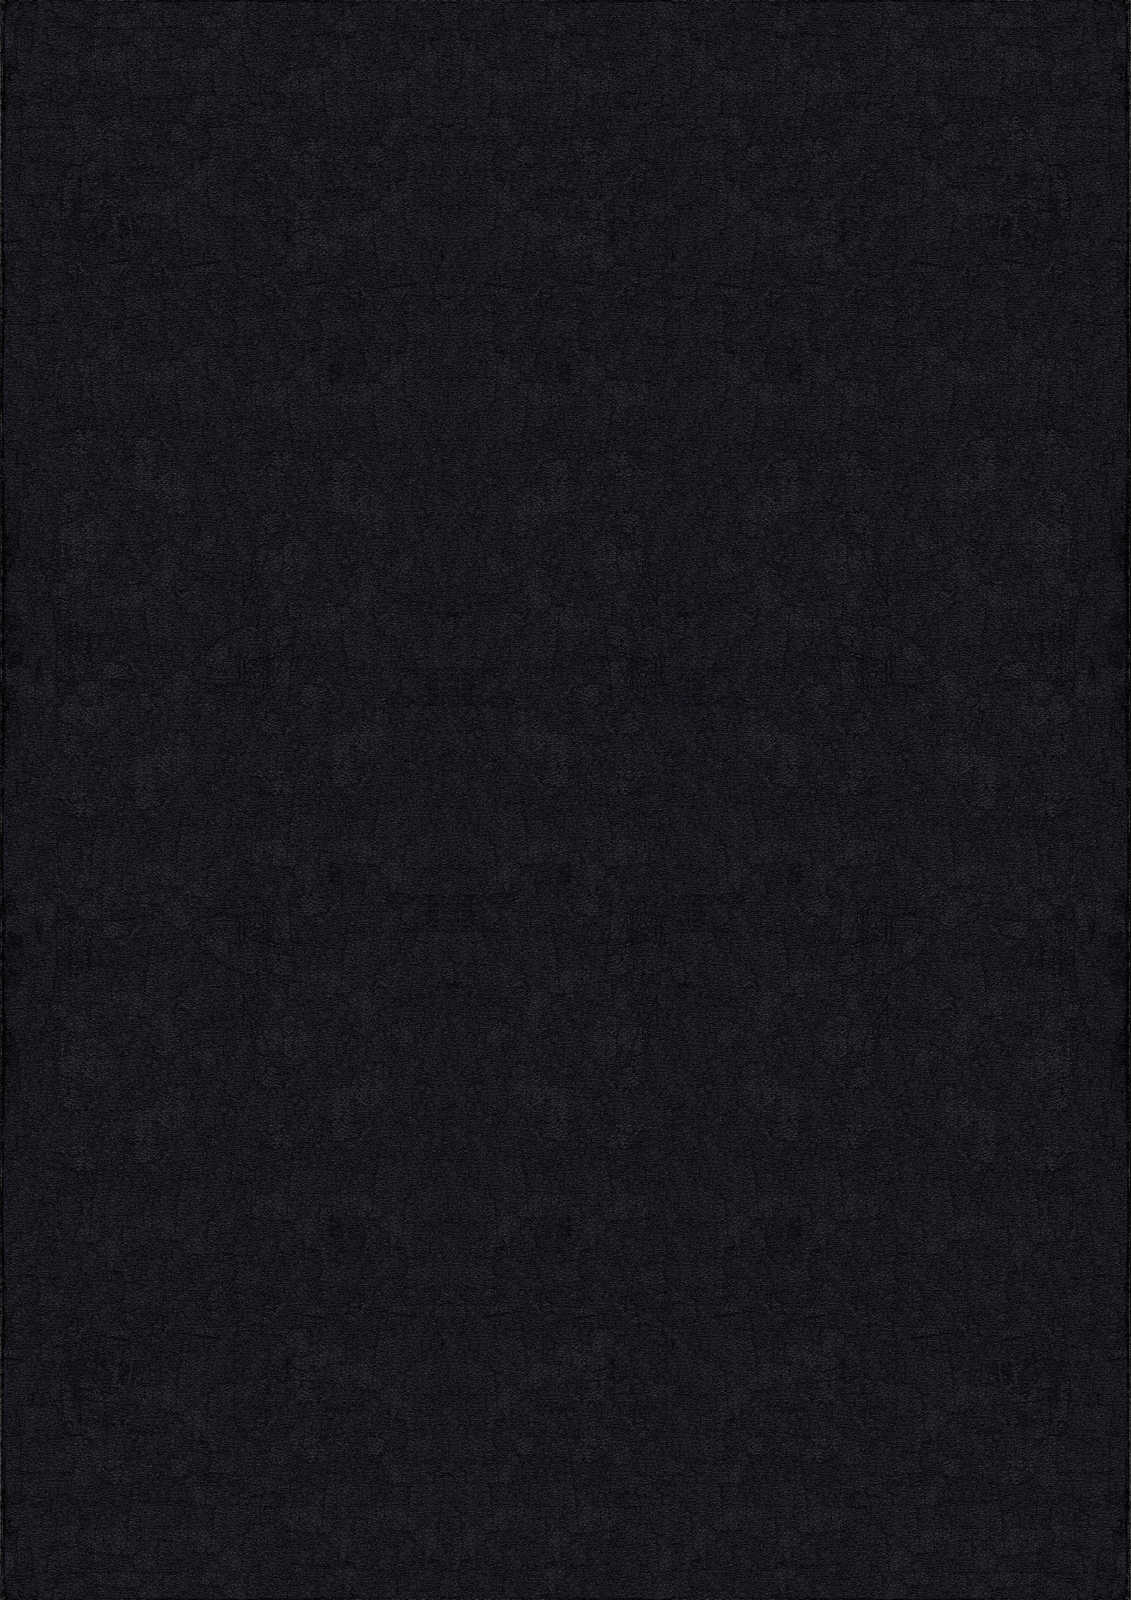             Tapis velouté à poils longs noir - 150 x 80 cm
        